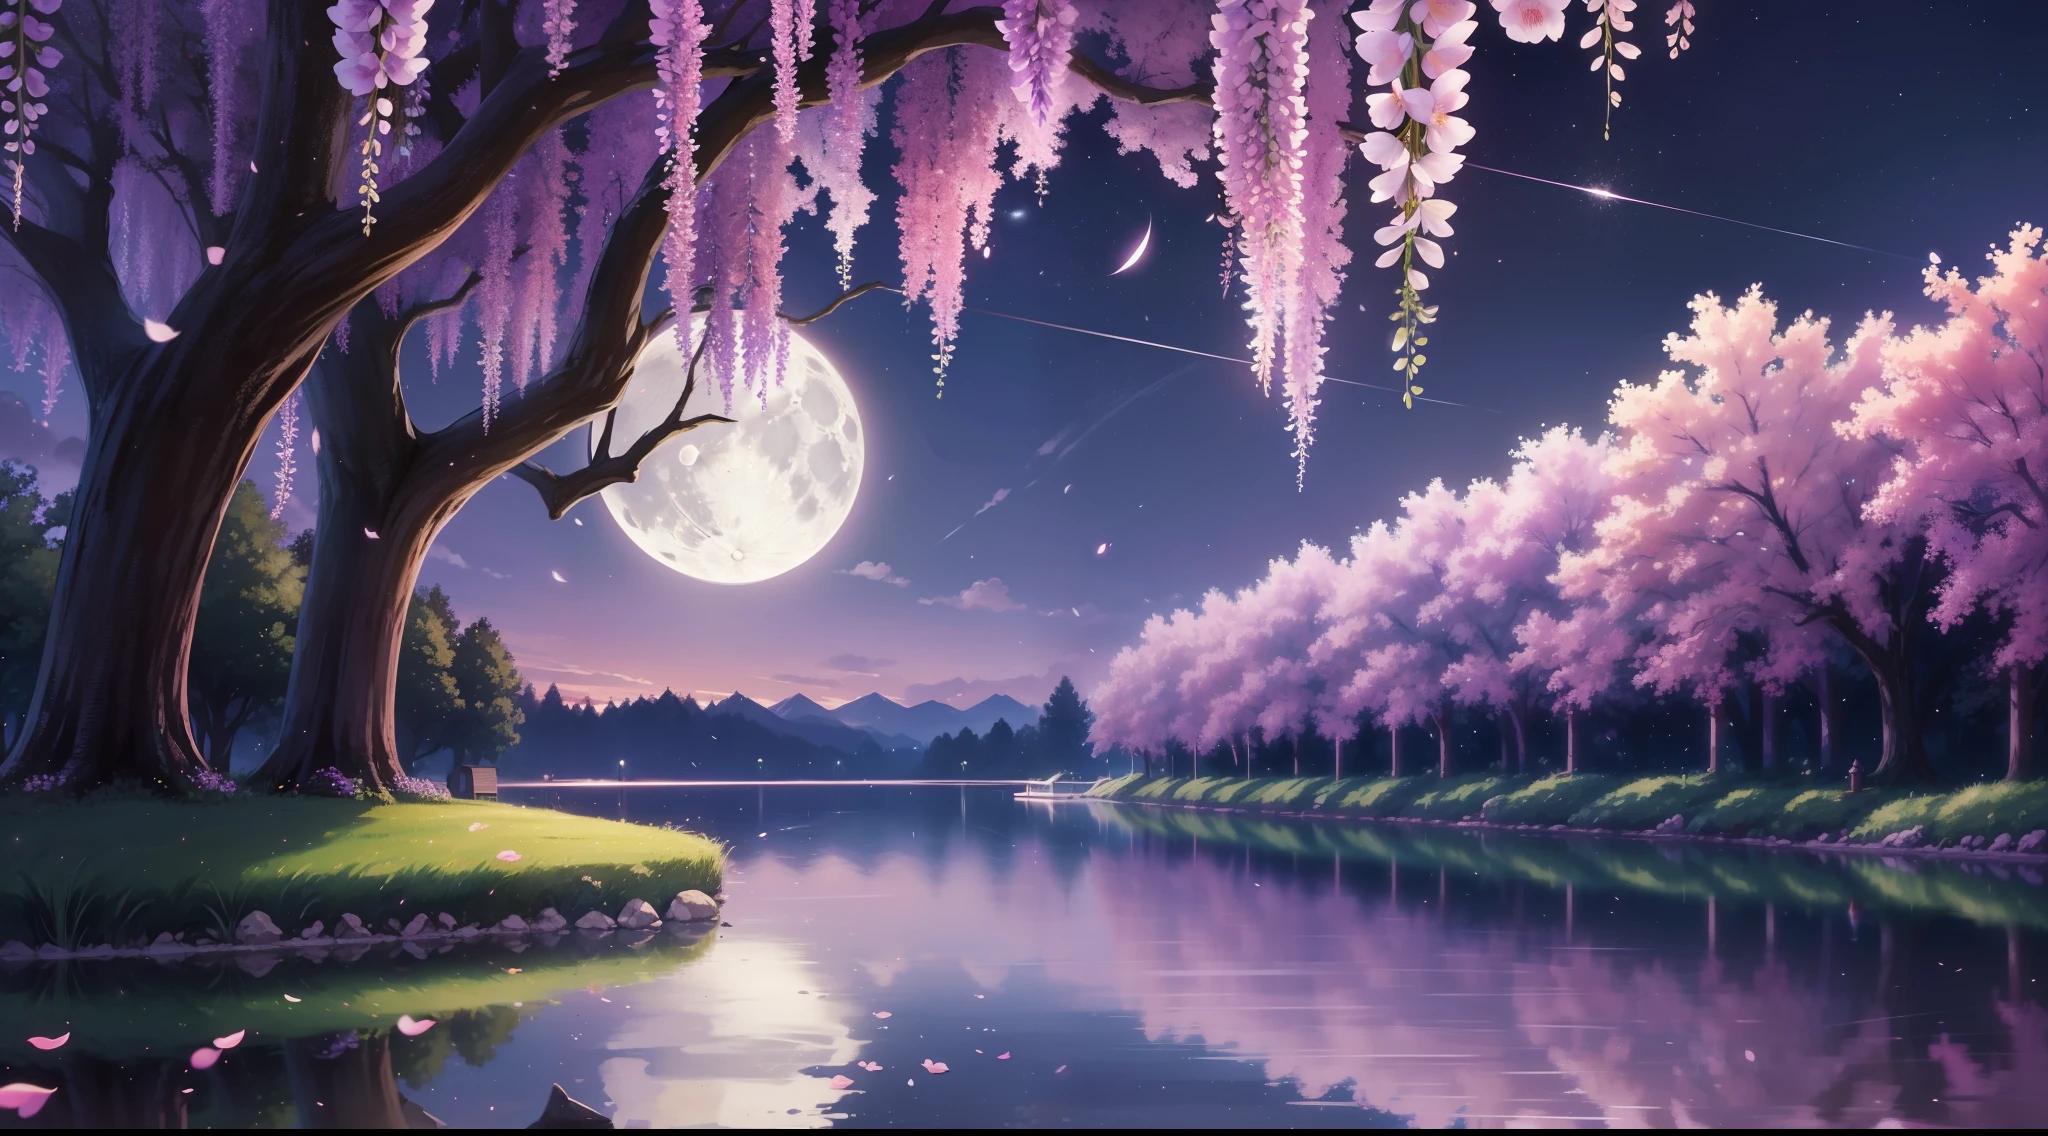 背景， CG， 普农， 夜晚， 月亮， 紫藤，A huge 紫藤 tree， 樱花， 一边是天空，另一边是池塘， 全景， 射线追踪， 反射光， 截然相反， 8千， 杰作， 最好的品质， 高品质， 高细节， 超级细节， 高分辨率， 超高清